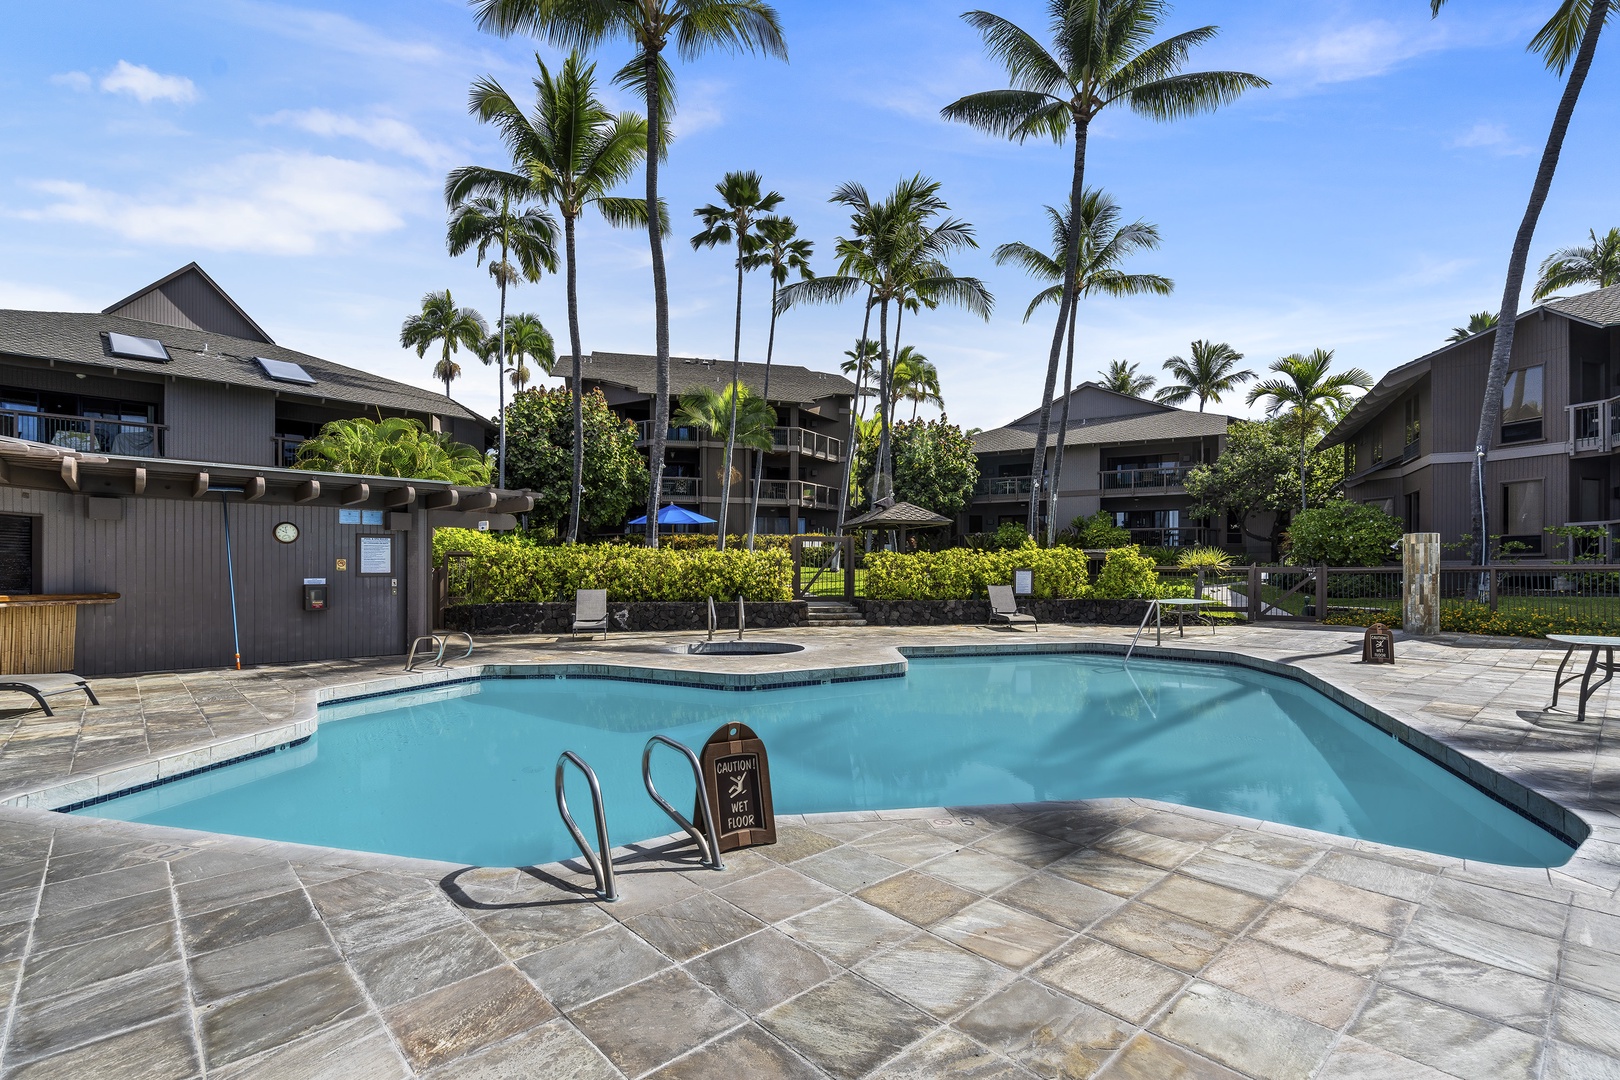 Kailua Kona Vacation Rentals, Kanaloa at Kona 1302 - Second pool at the complex